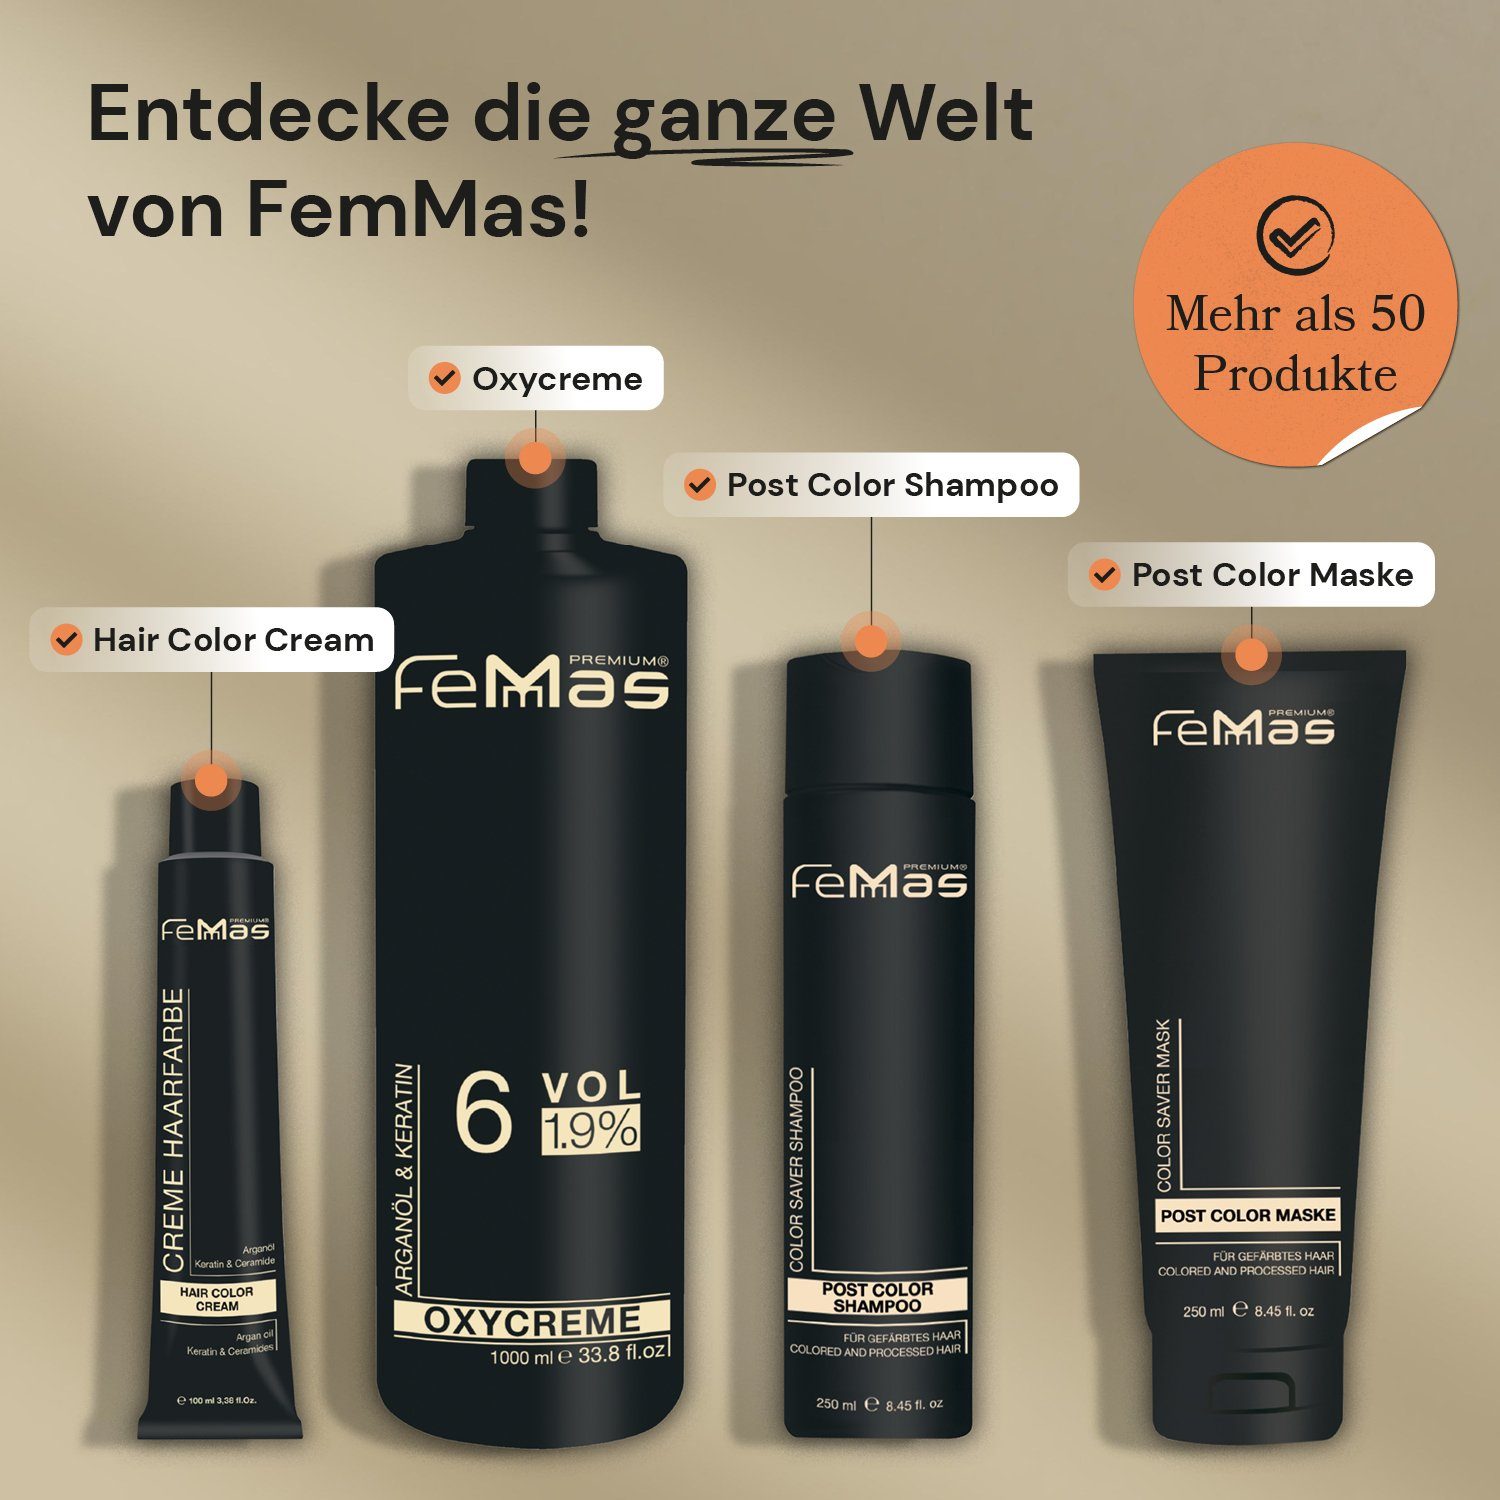 Maske Saver Shampoo 250ml Color Premium FemMas + Haarpflege-Set Femmas 250ml Color Saver